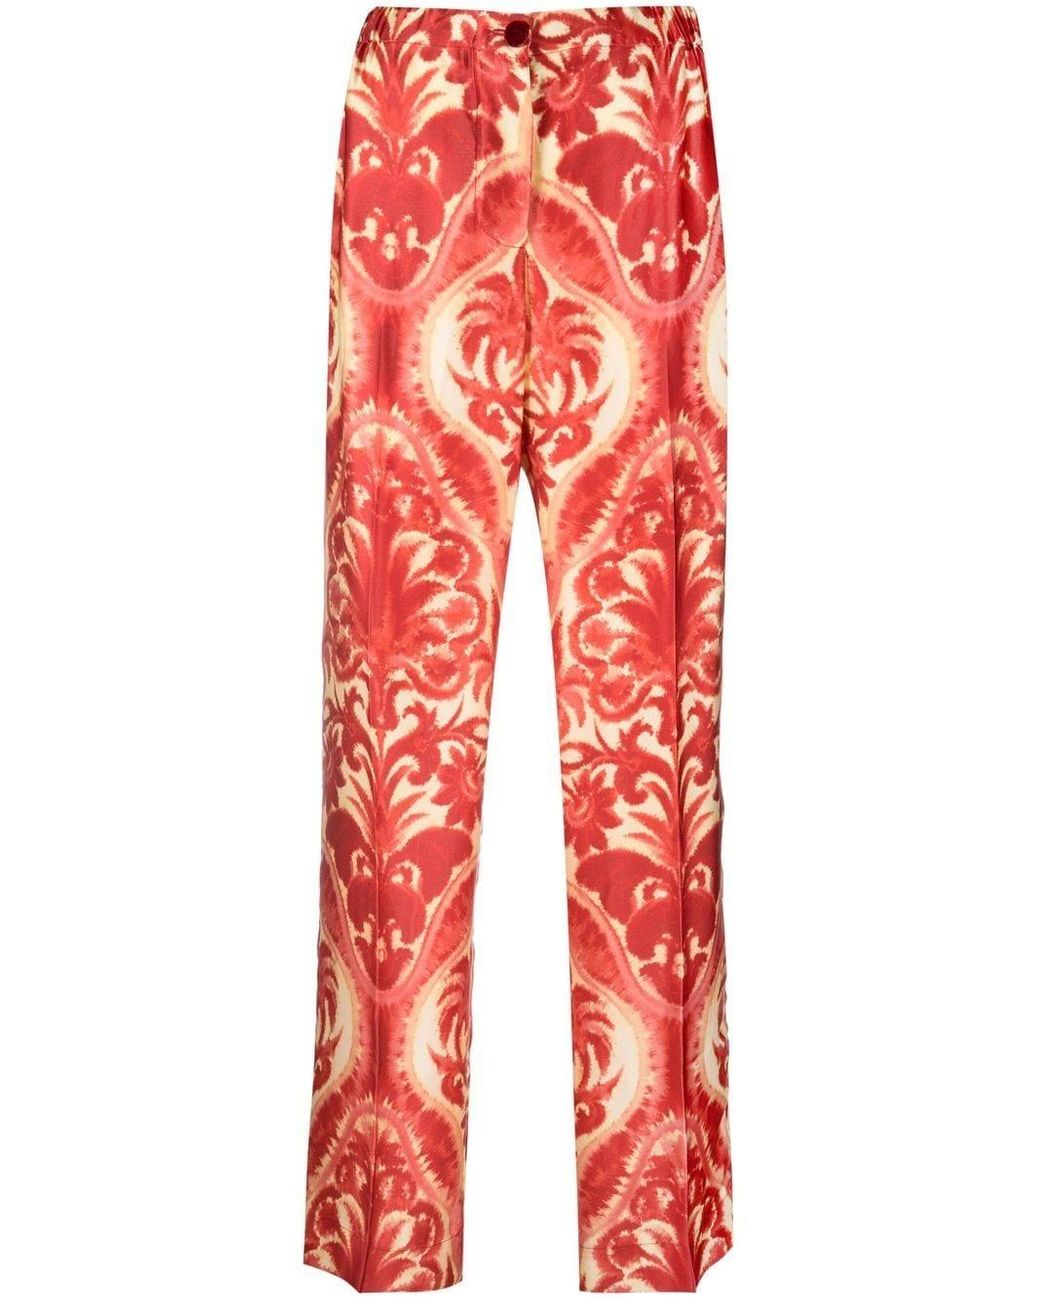 Femme Vêtements Pantalons décontractés Pantalon Satin F.R.S For Restless Sleepers en coloris Rouge élégants et chinos Pantalons moulants 